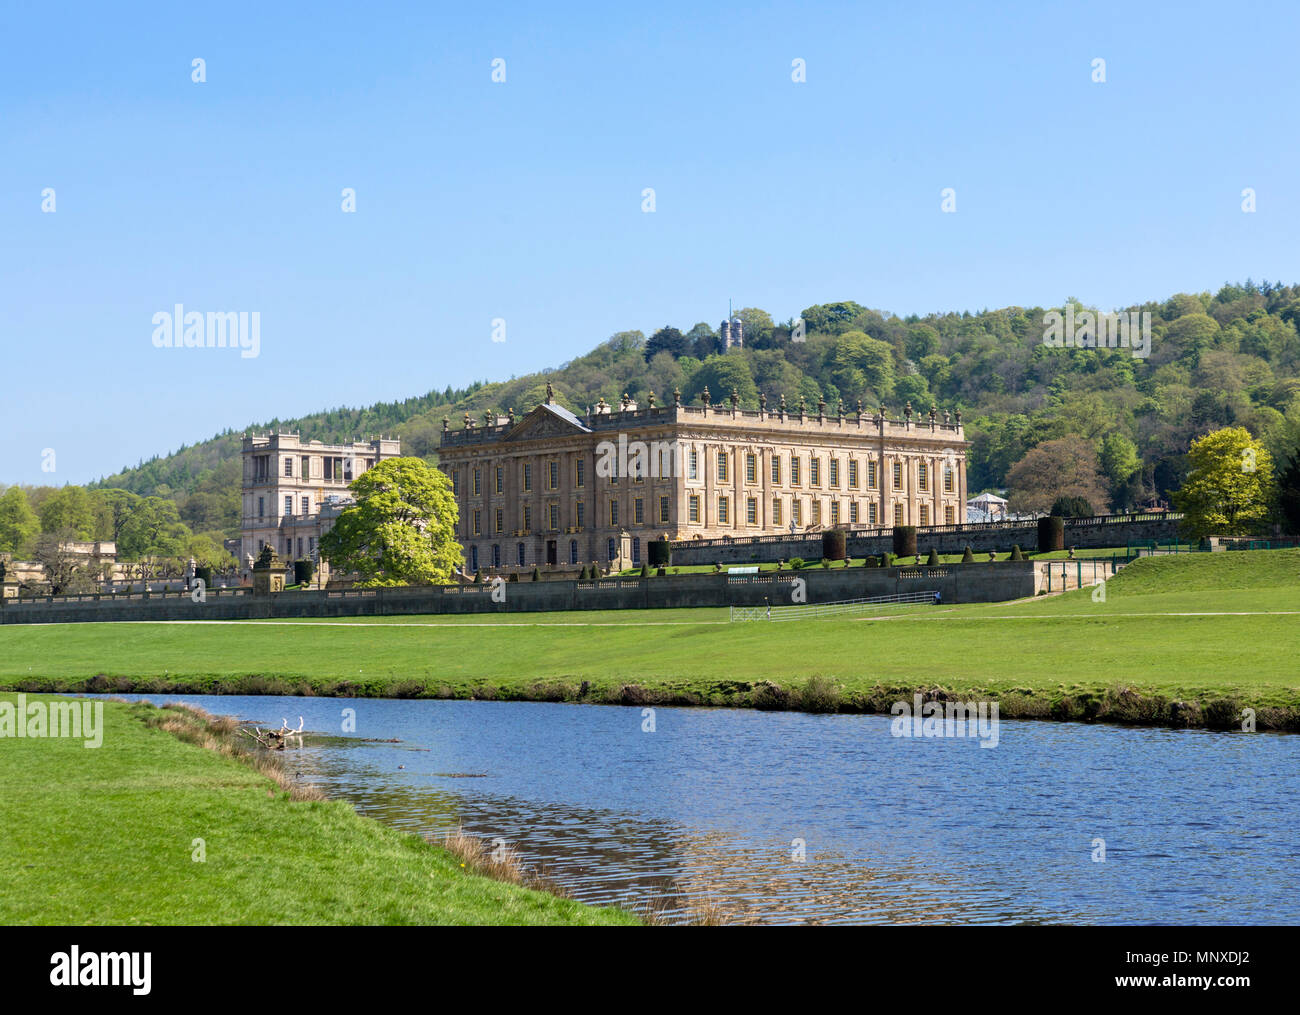 Chatsworth House des rives de la rivière Derwent, Chatsworth, Derbyshire, Angleterre, RU Banque D'Images